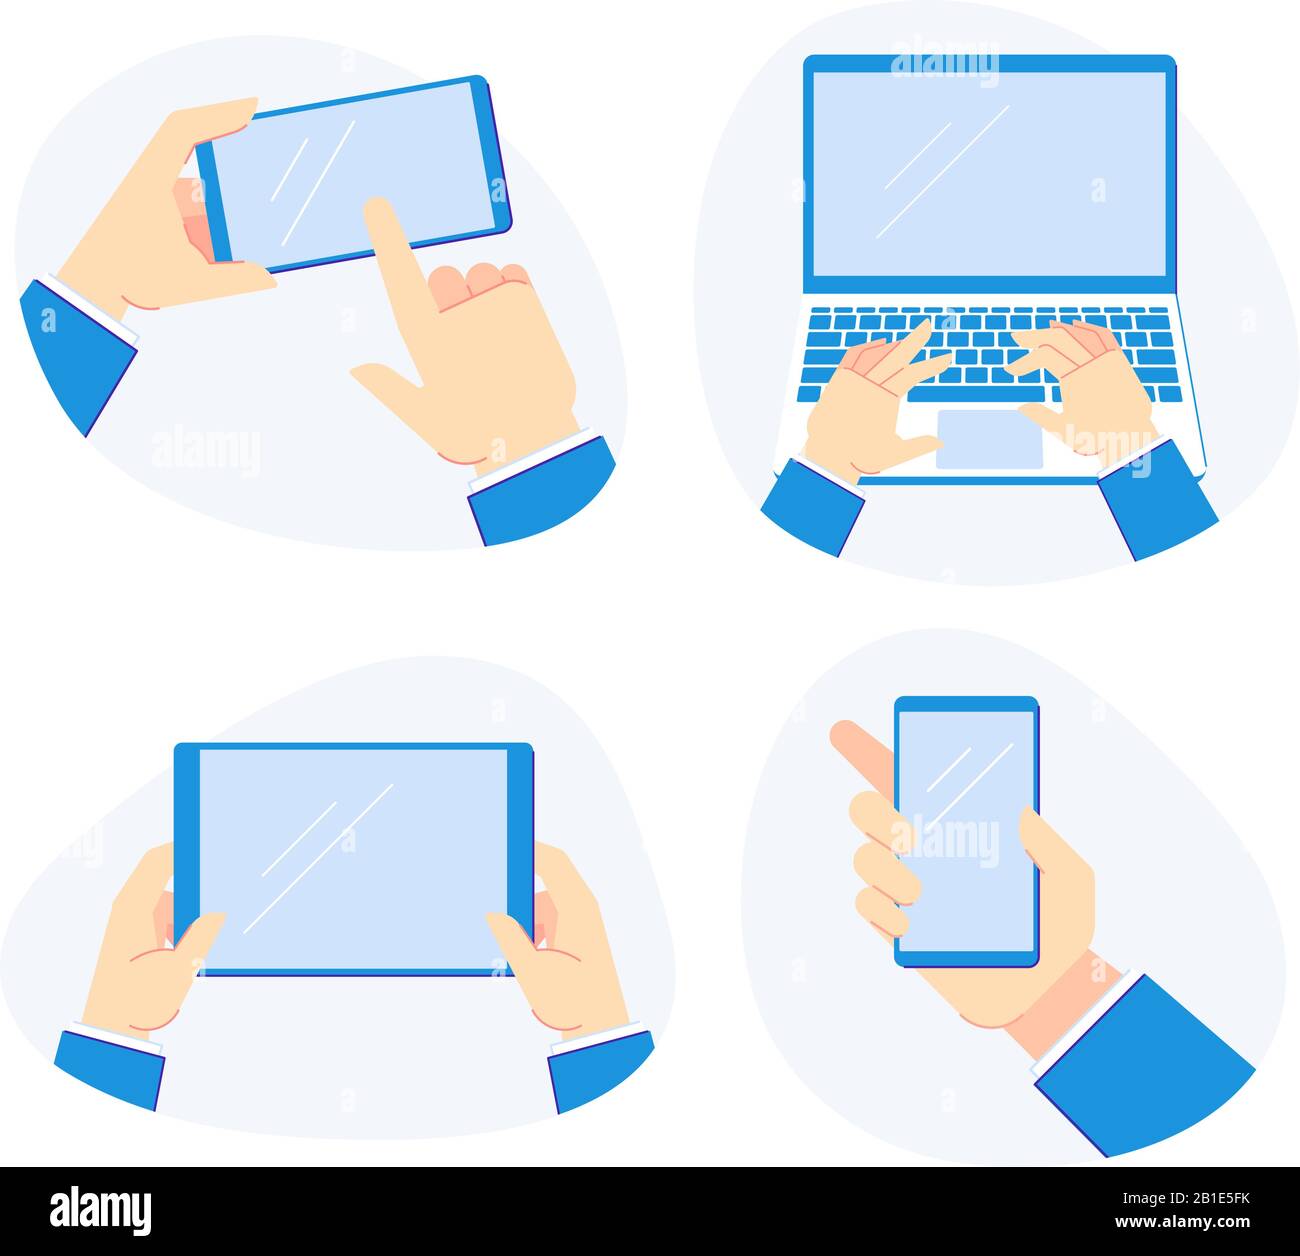 Halten Sie die Geräte in der Hand. Smartphone in den Händen halten, Laptop und Mobile Tablet Vektorgrafik-Set halten Stock Vektor